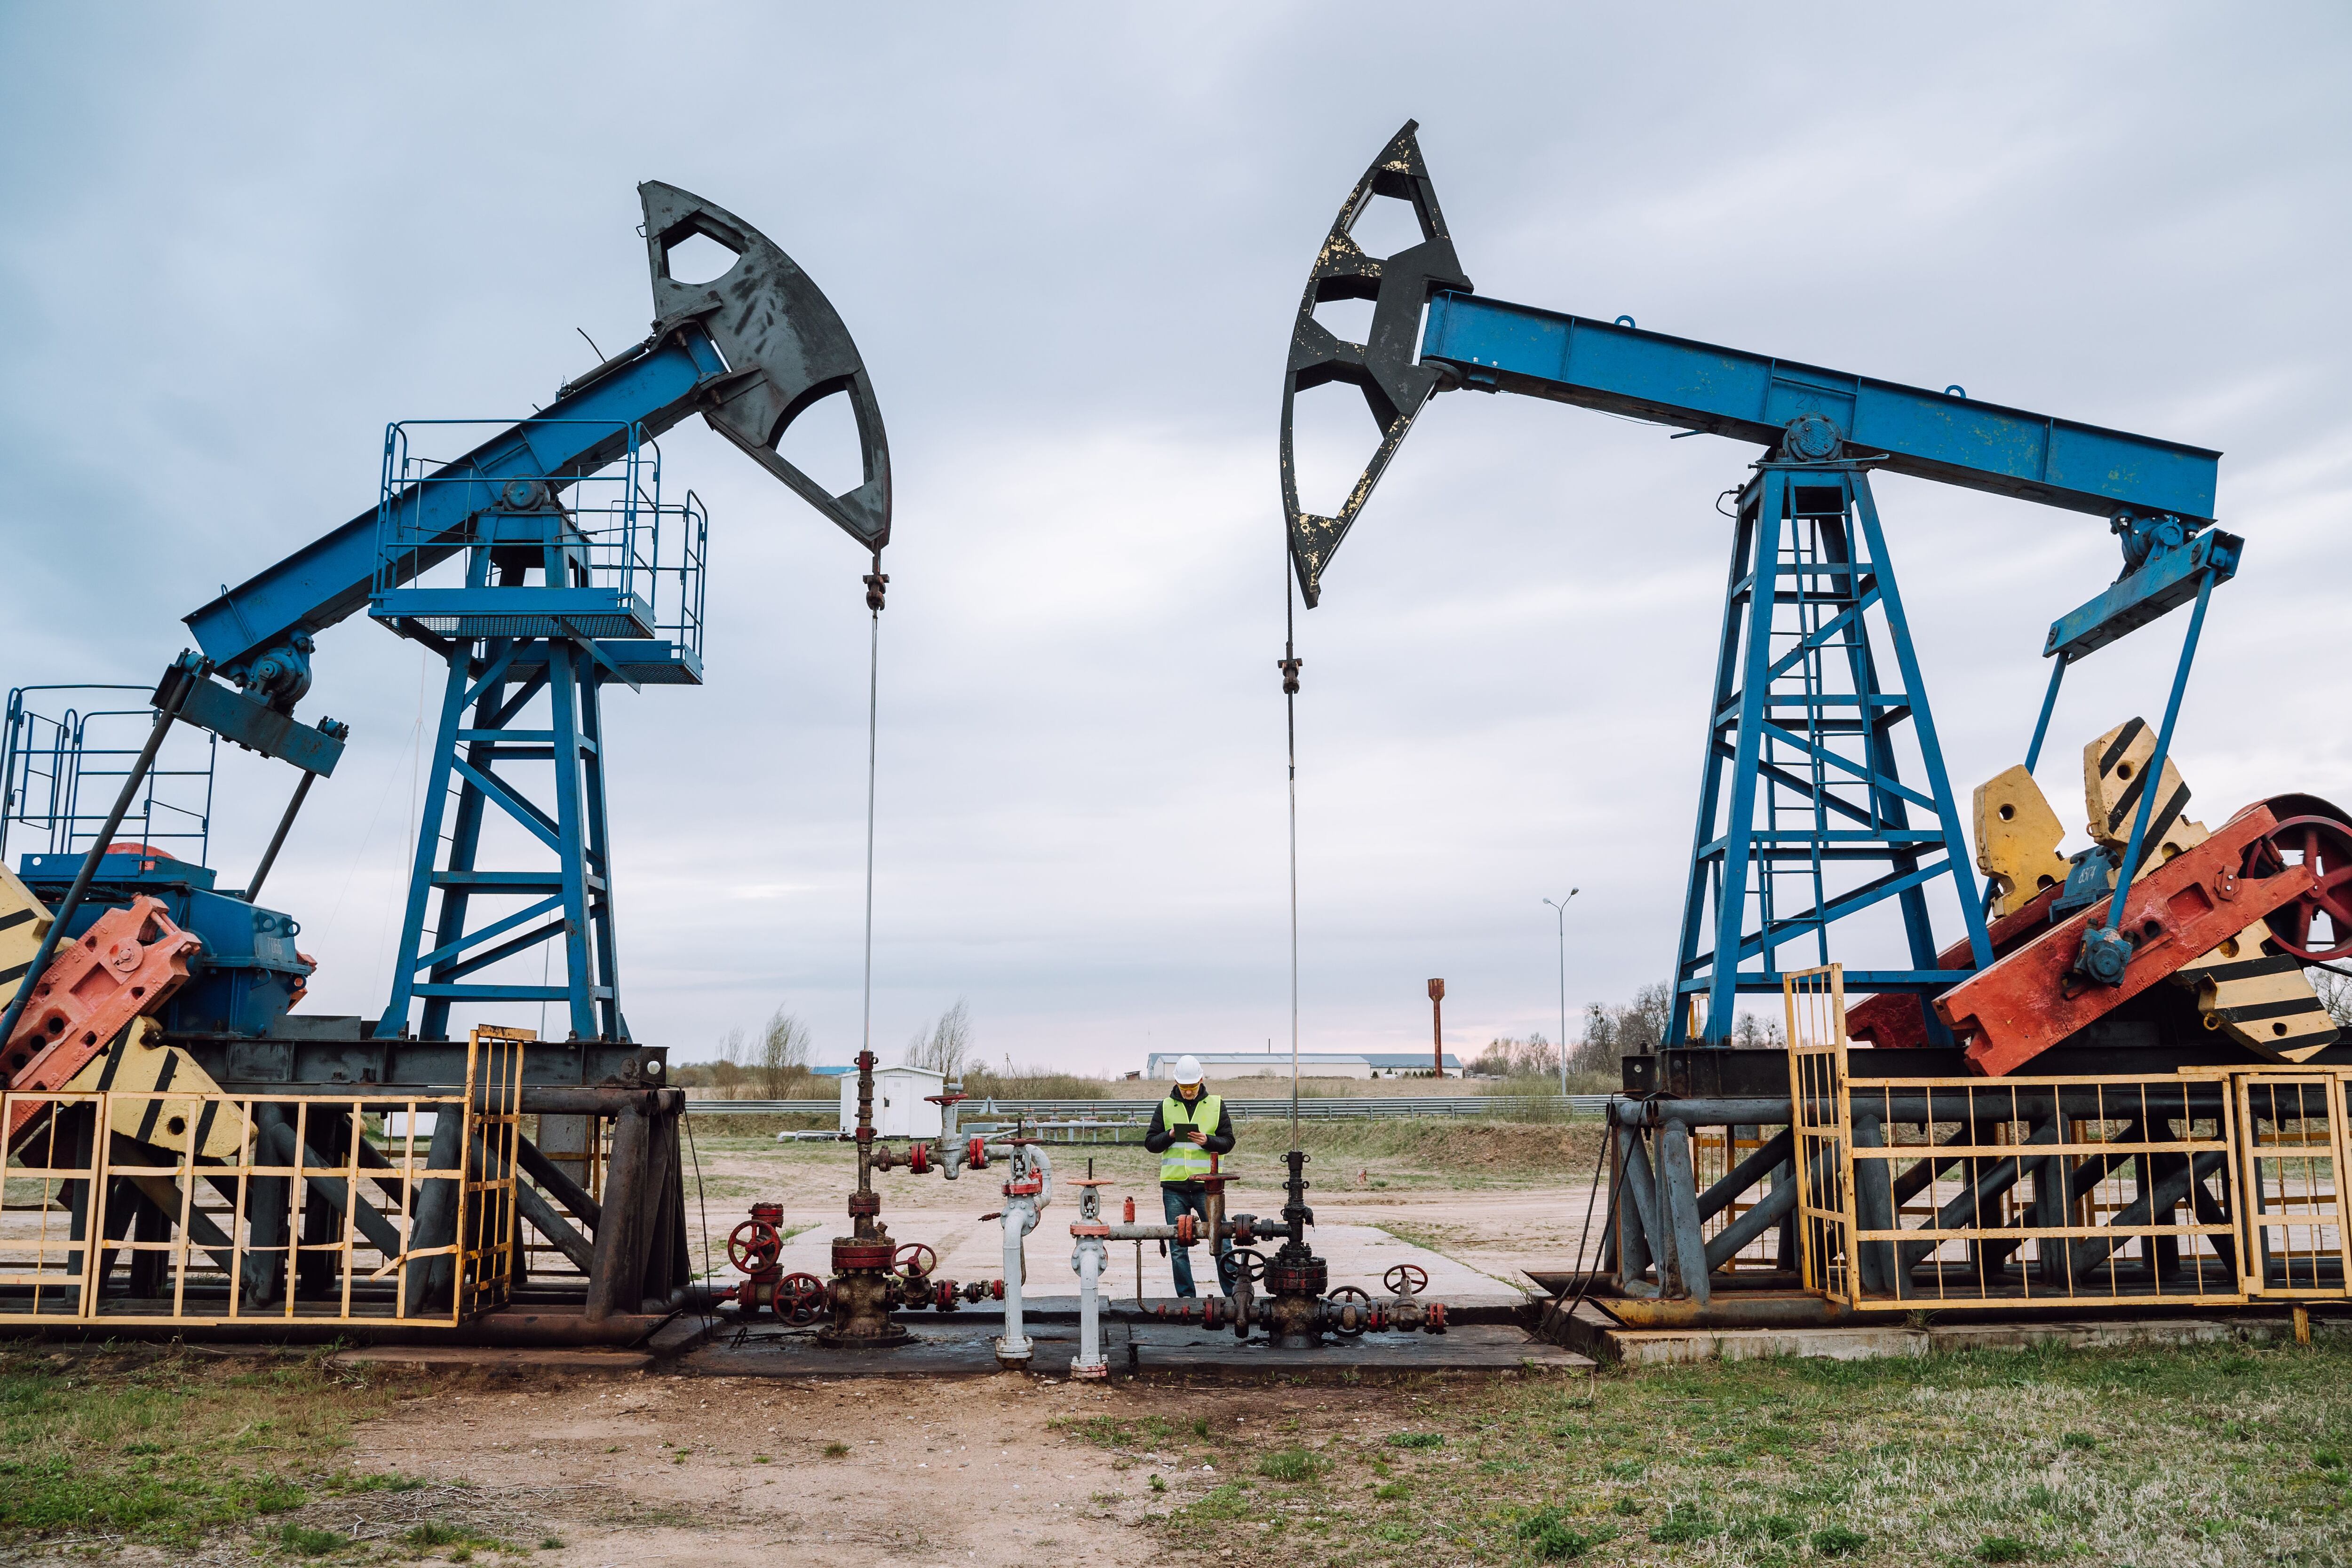 Ingeniería de petróleos - Getty Images